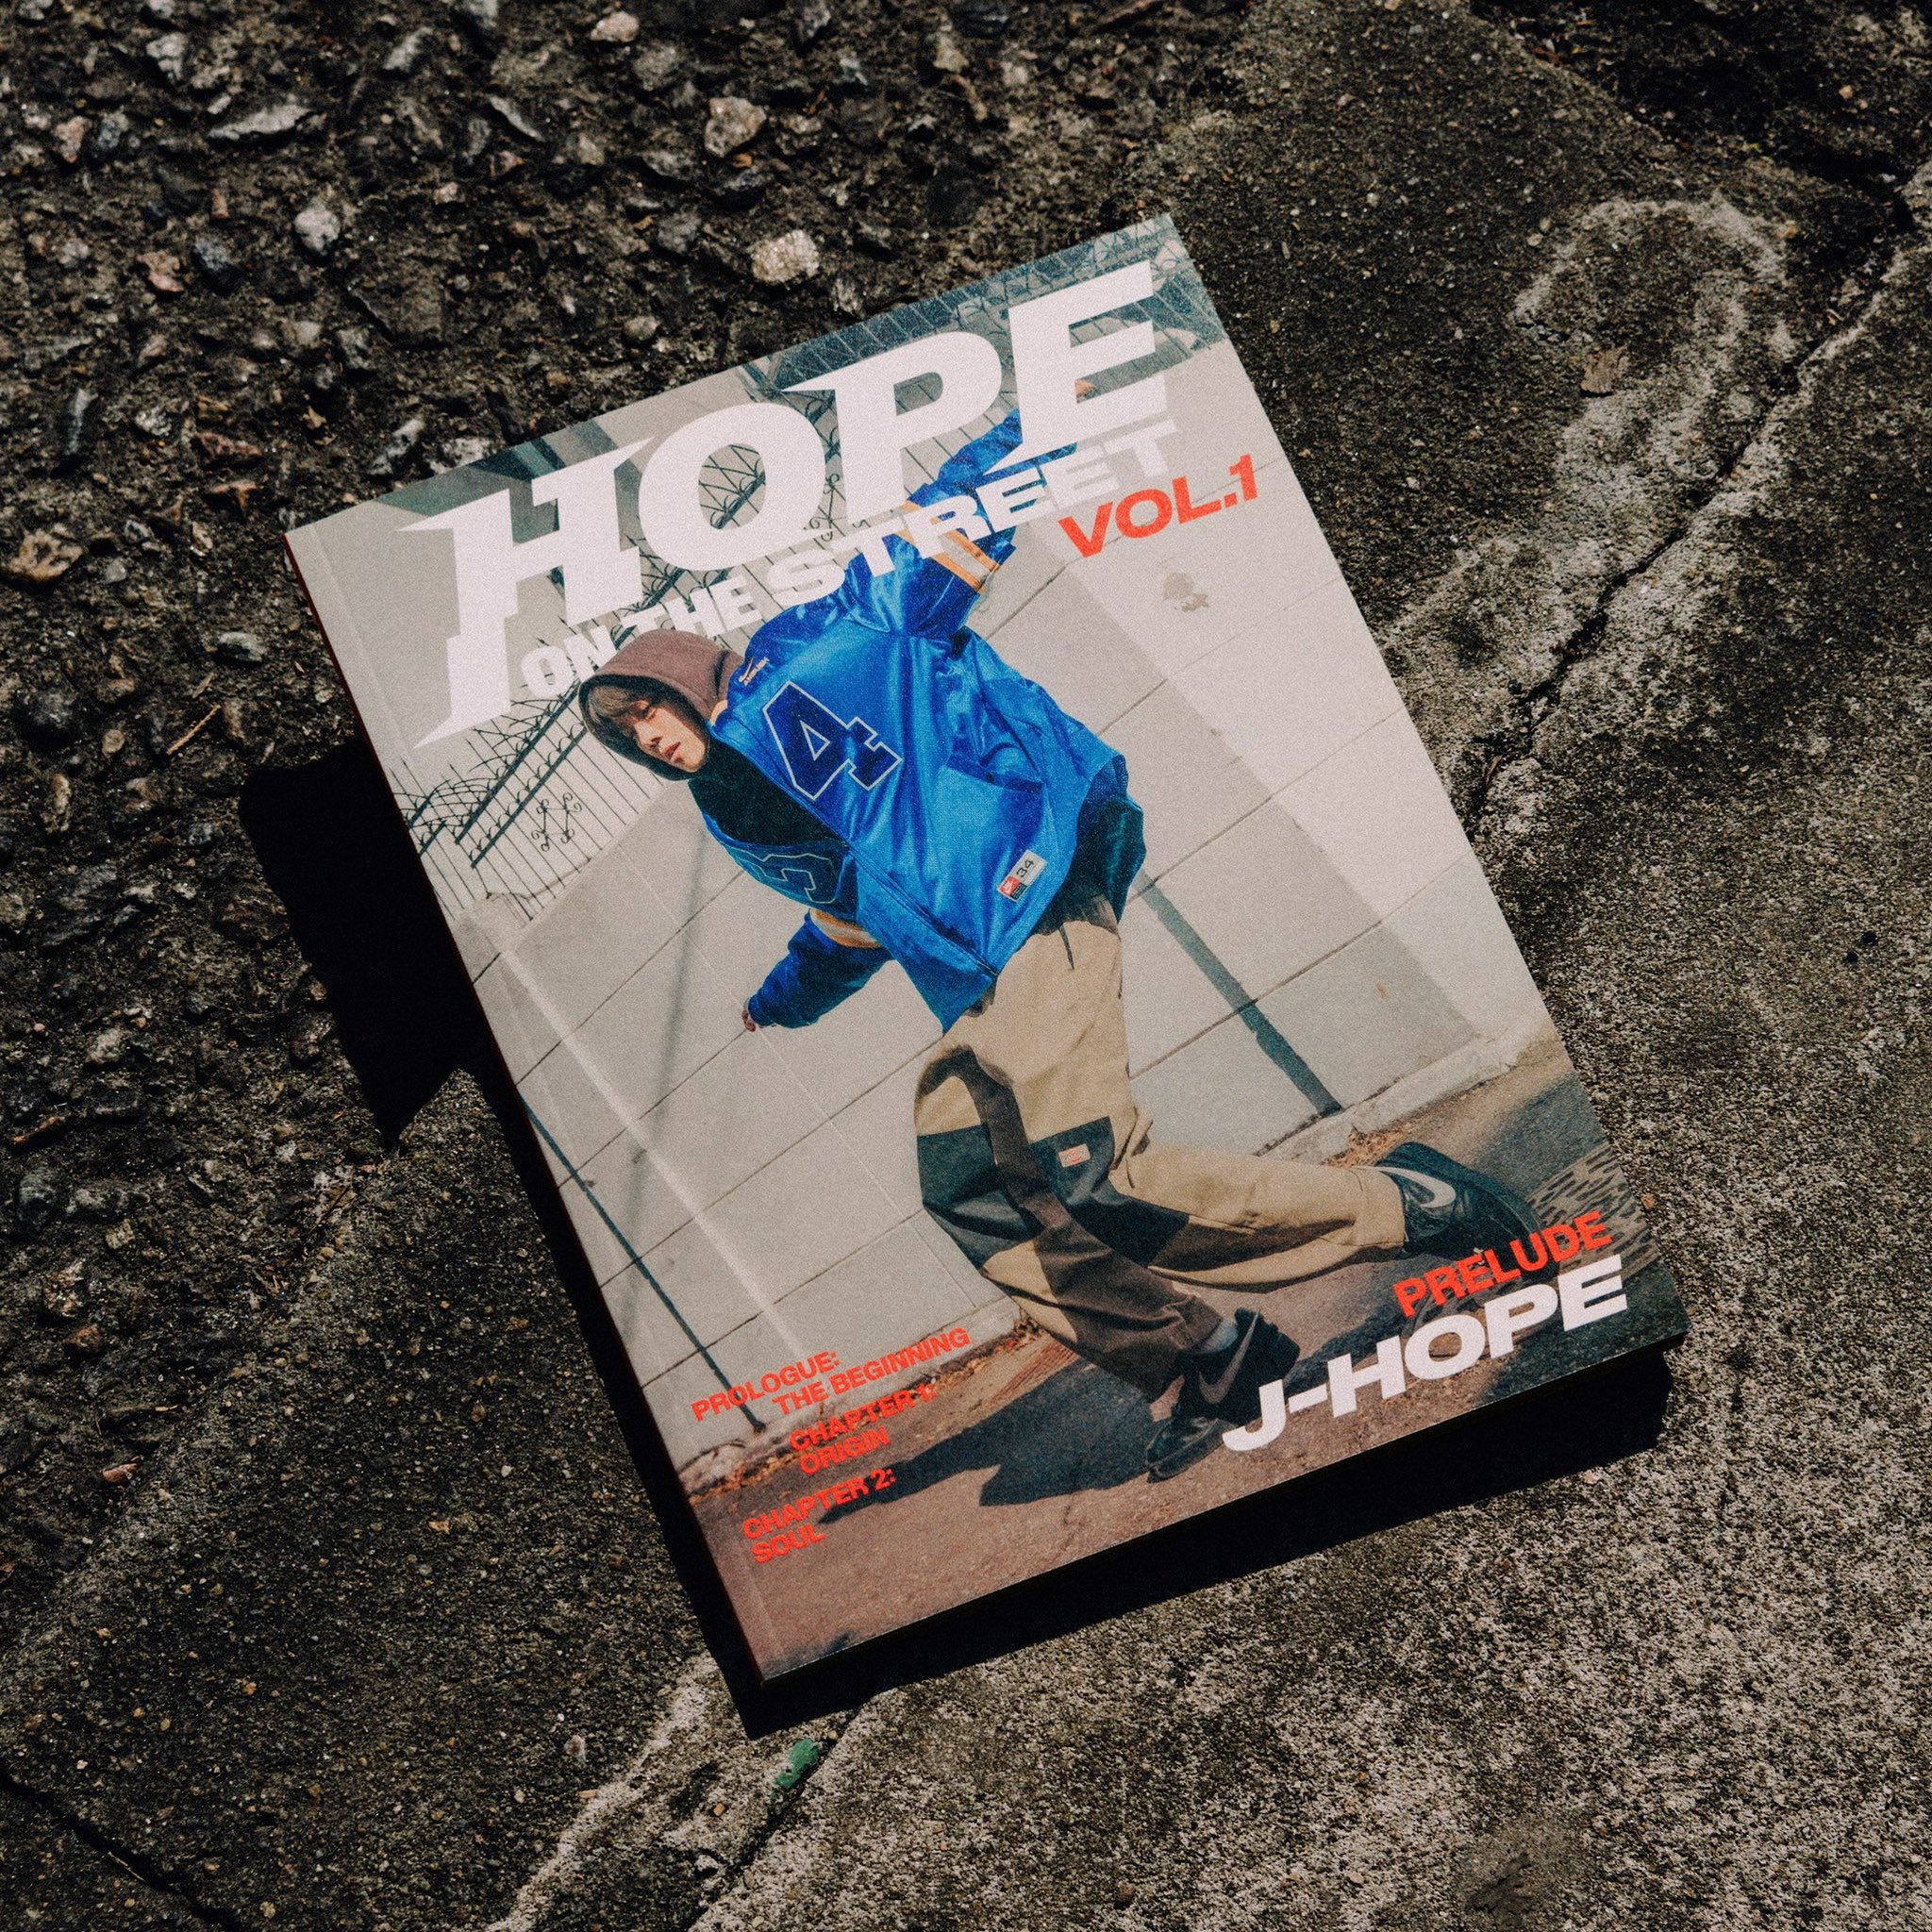 J-Hope anuncia lançamento do álbum ‘Hope on the street vol.1’ para o dia 29 de março.